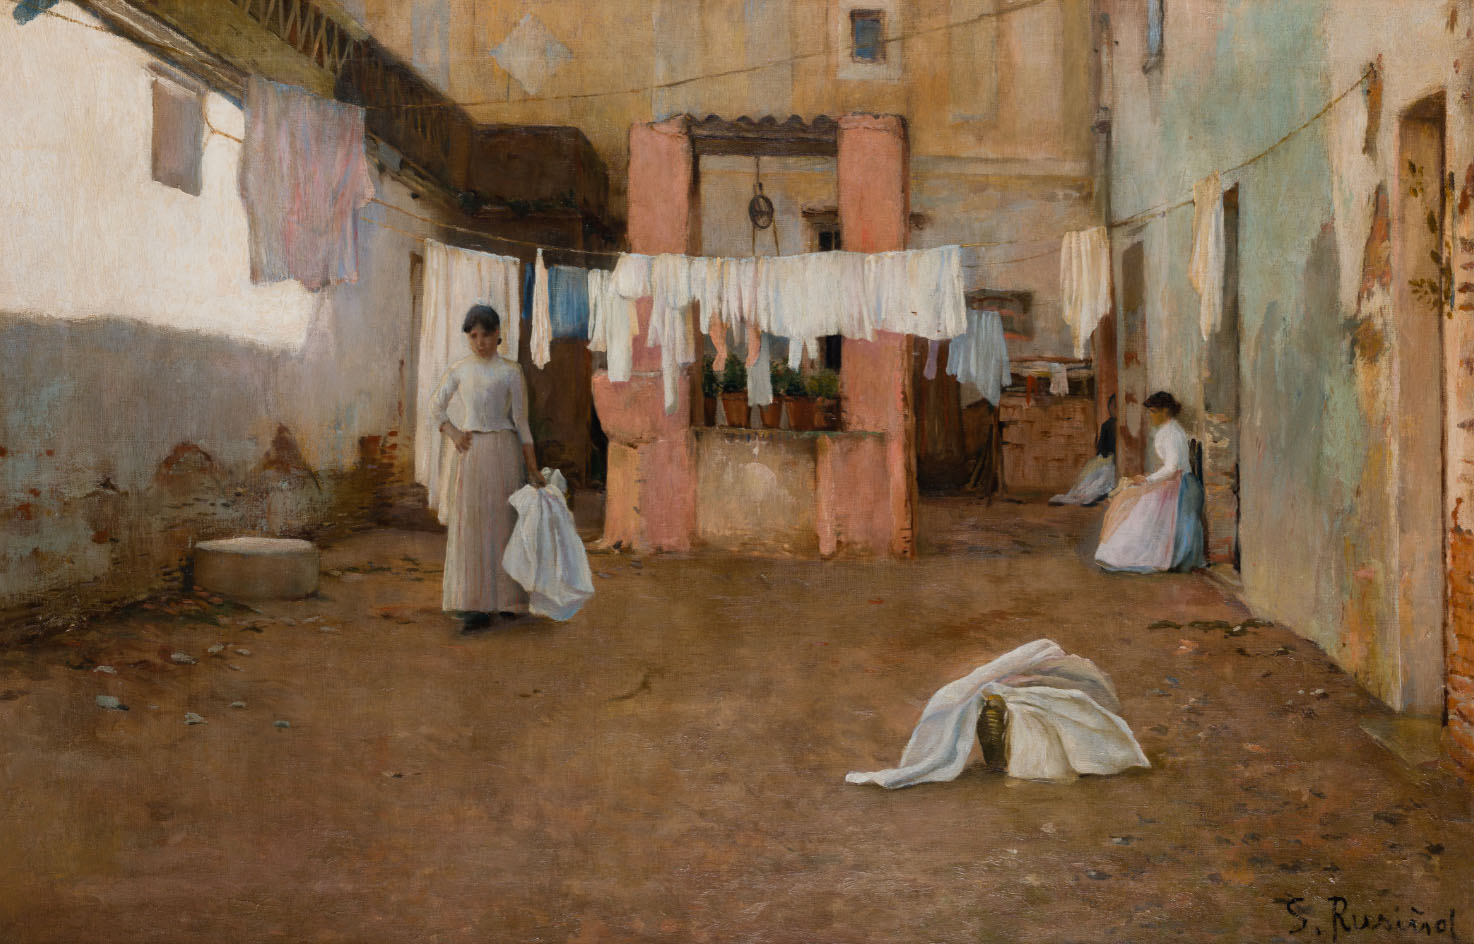 Santiago Rusiñol, Lavanderas de la Barceloneta, 1890. Salida: 130.000 euros. Remate: 140.000 euros